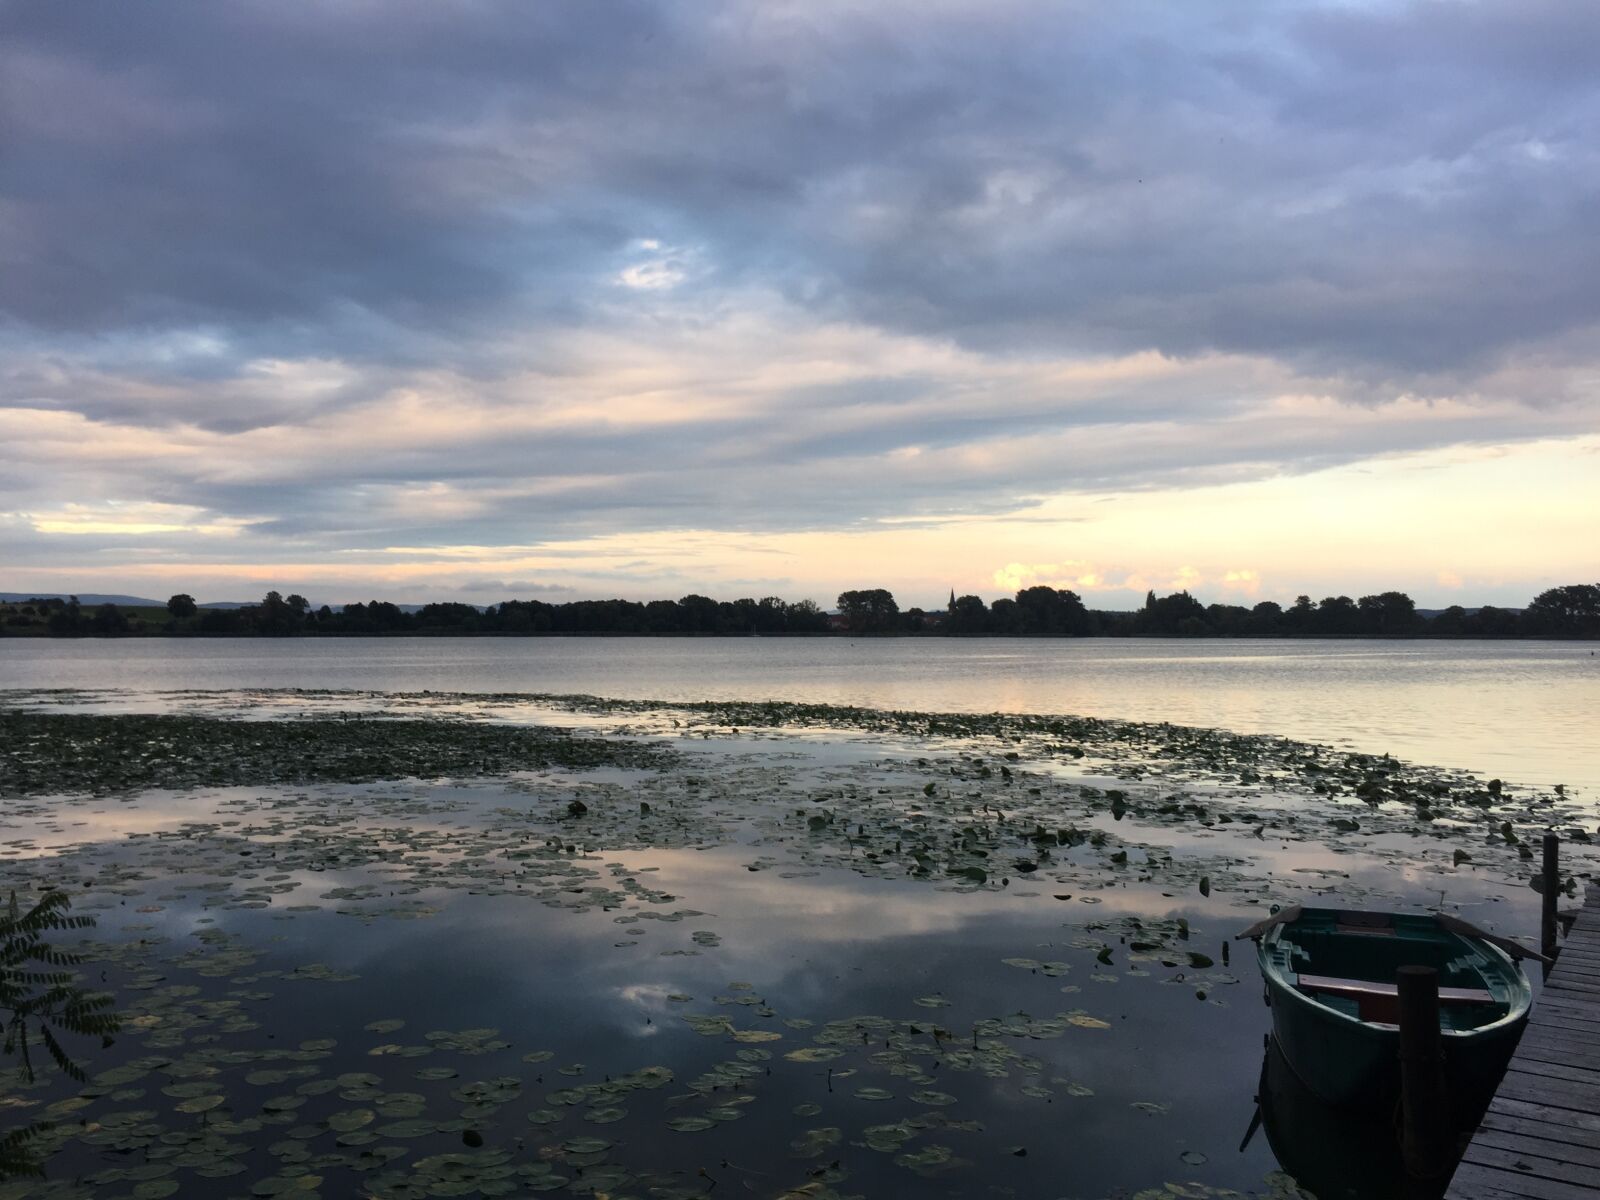 Apple iPhone 6 sample photo. Lake, sunset, abendstimmung photography